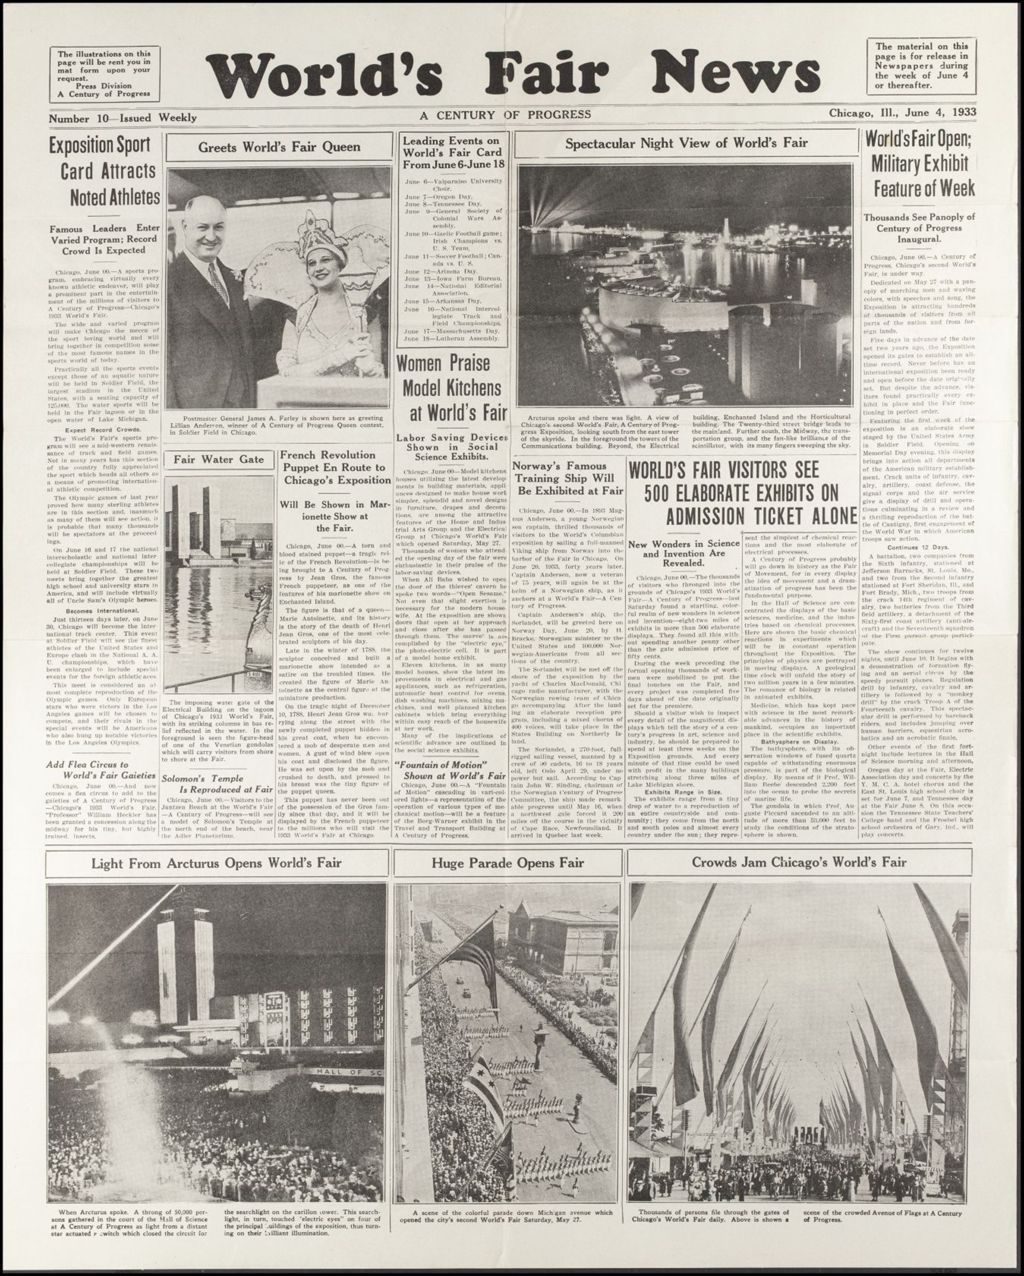 Miniature of World's Fair News, June - October 1933 (Folder 14-208)